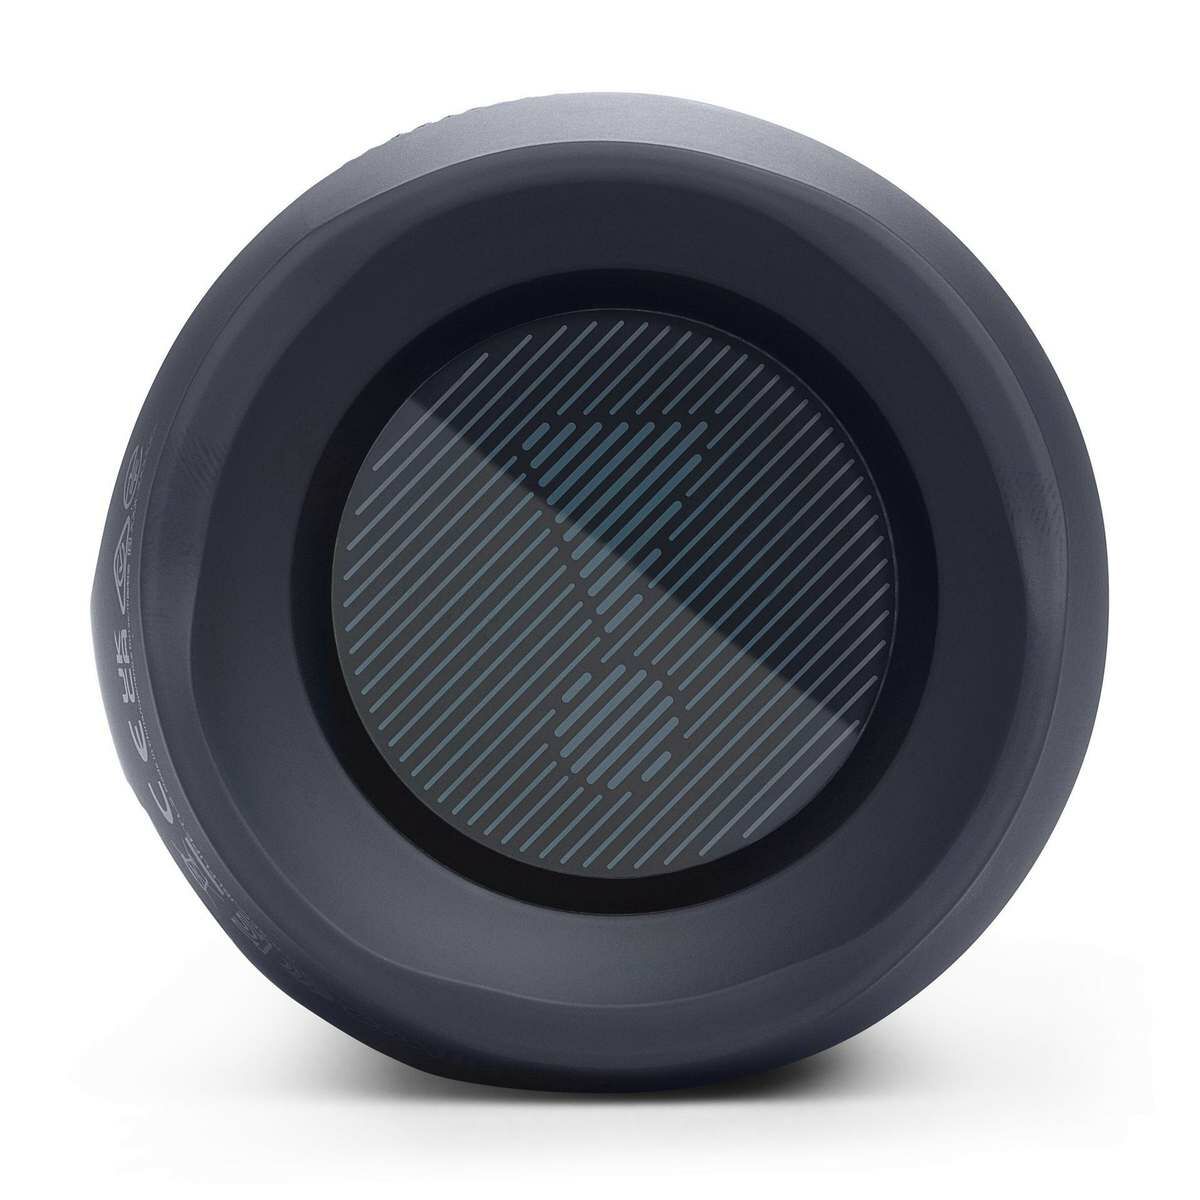 Kép 6/9 - JBL Flip Essential 2 Portable Bluetooth Speaker, hordozható hangszóró, sötét szürke EU